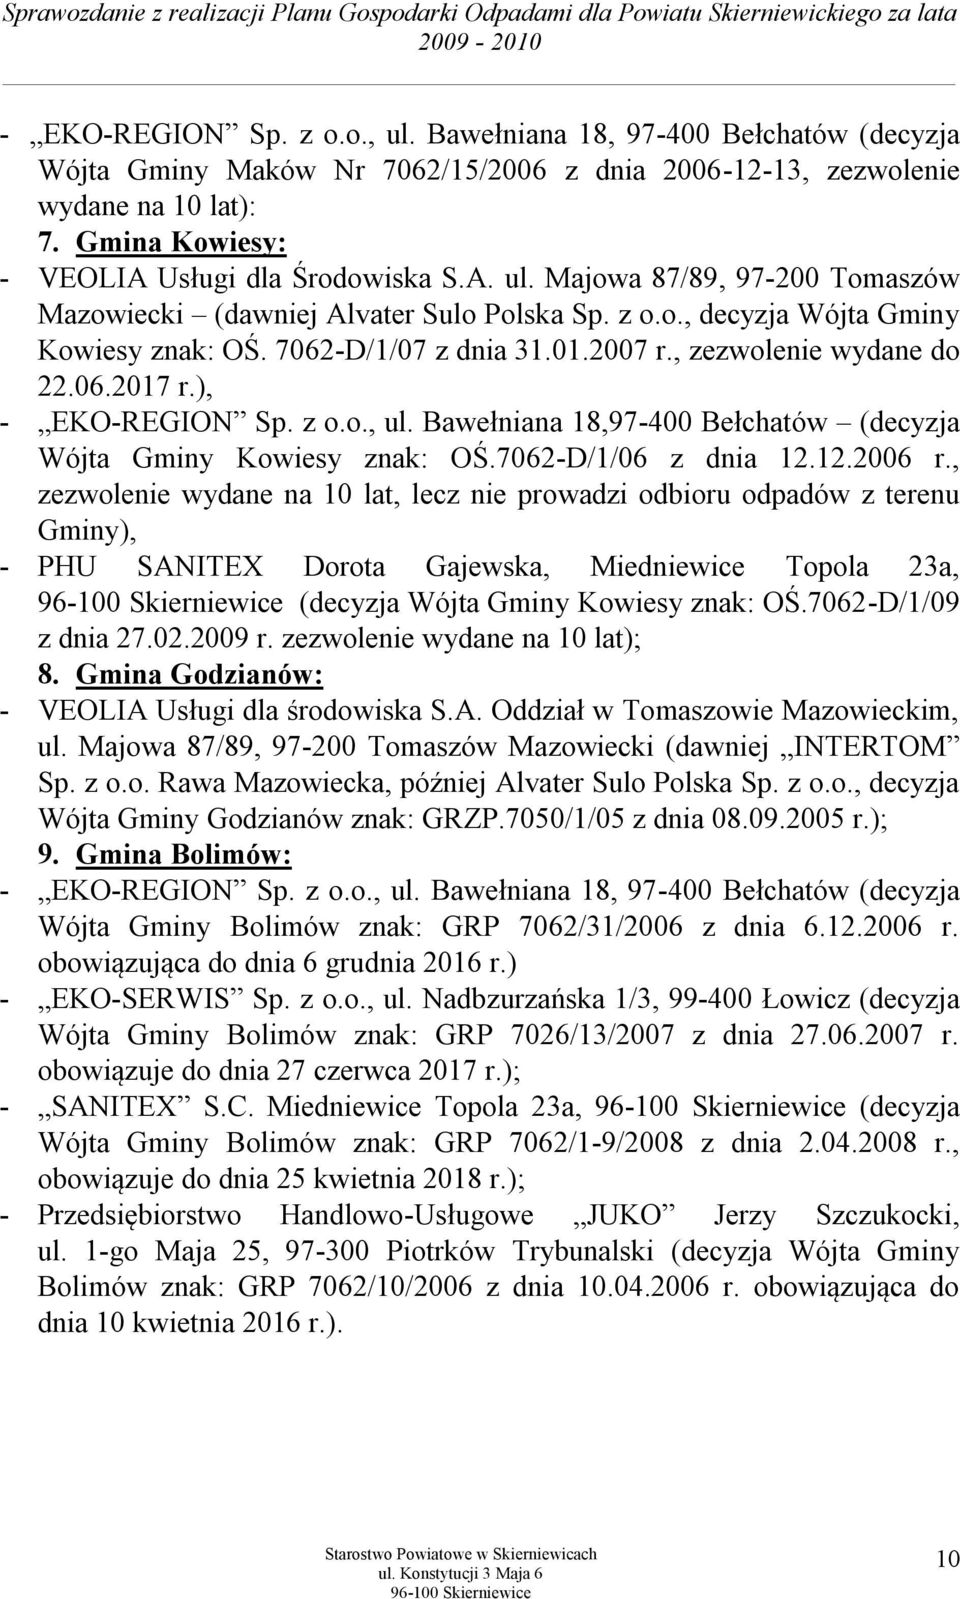 2007 r., zezwolenie wydane do 22.06.2017 r.), - EKO-REGION Sp. z o.o., ul. Bawełniana 18,97-400 Bełchatów (decyzja Wójta Gminy Kowiesy znak: OŚ.7062-D/1/06 z dnia 12.12.2006 r.